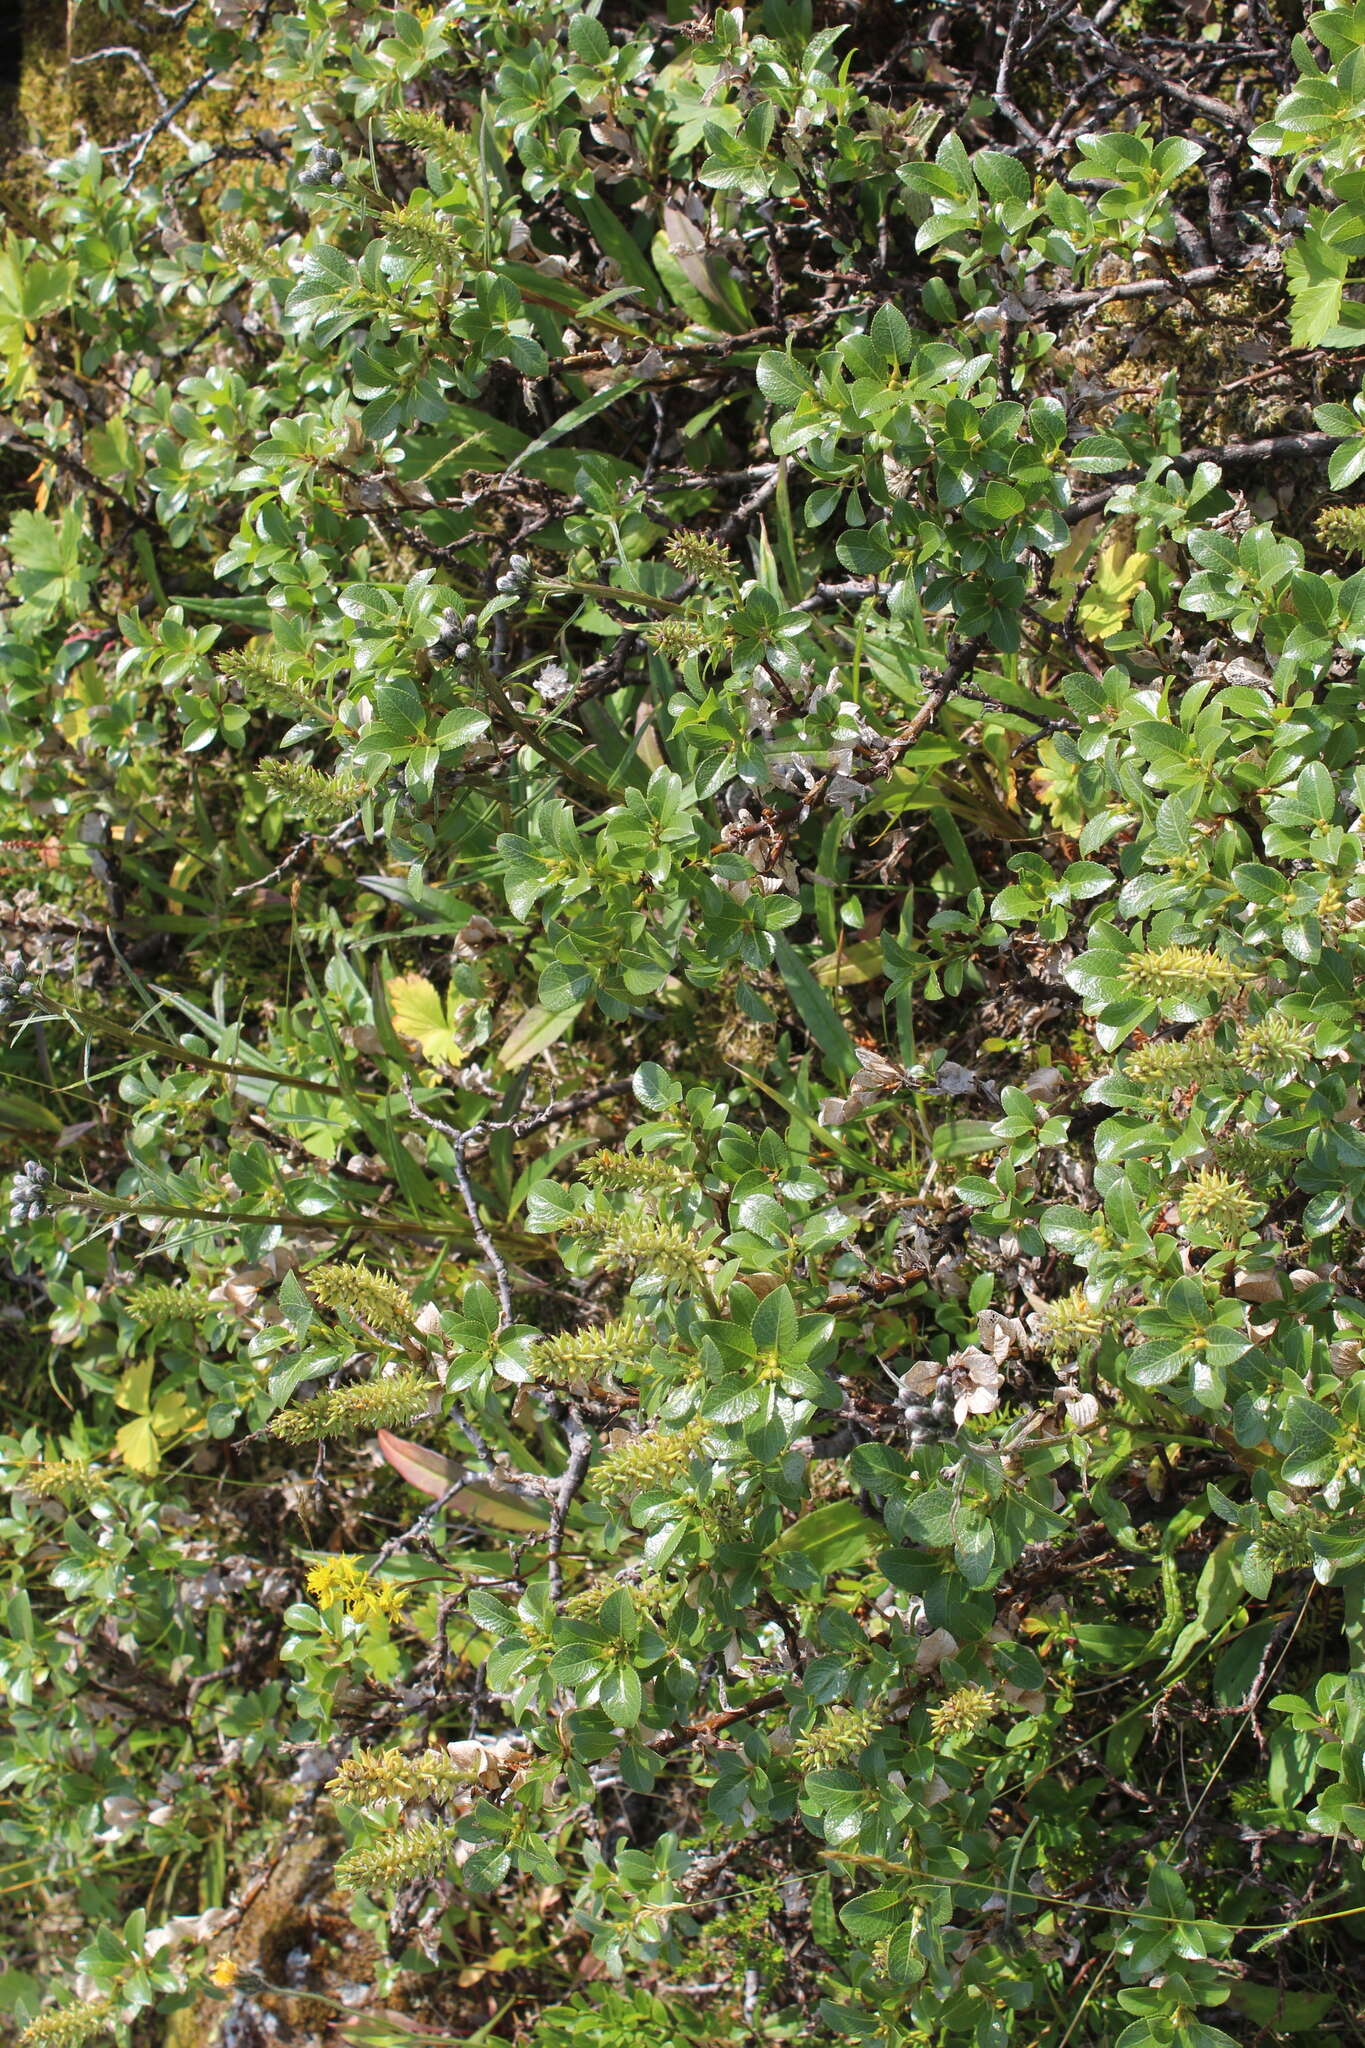 Image de Salix myrsinites L.